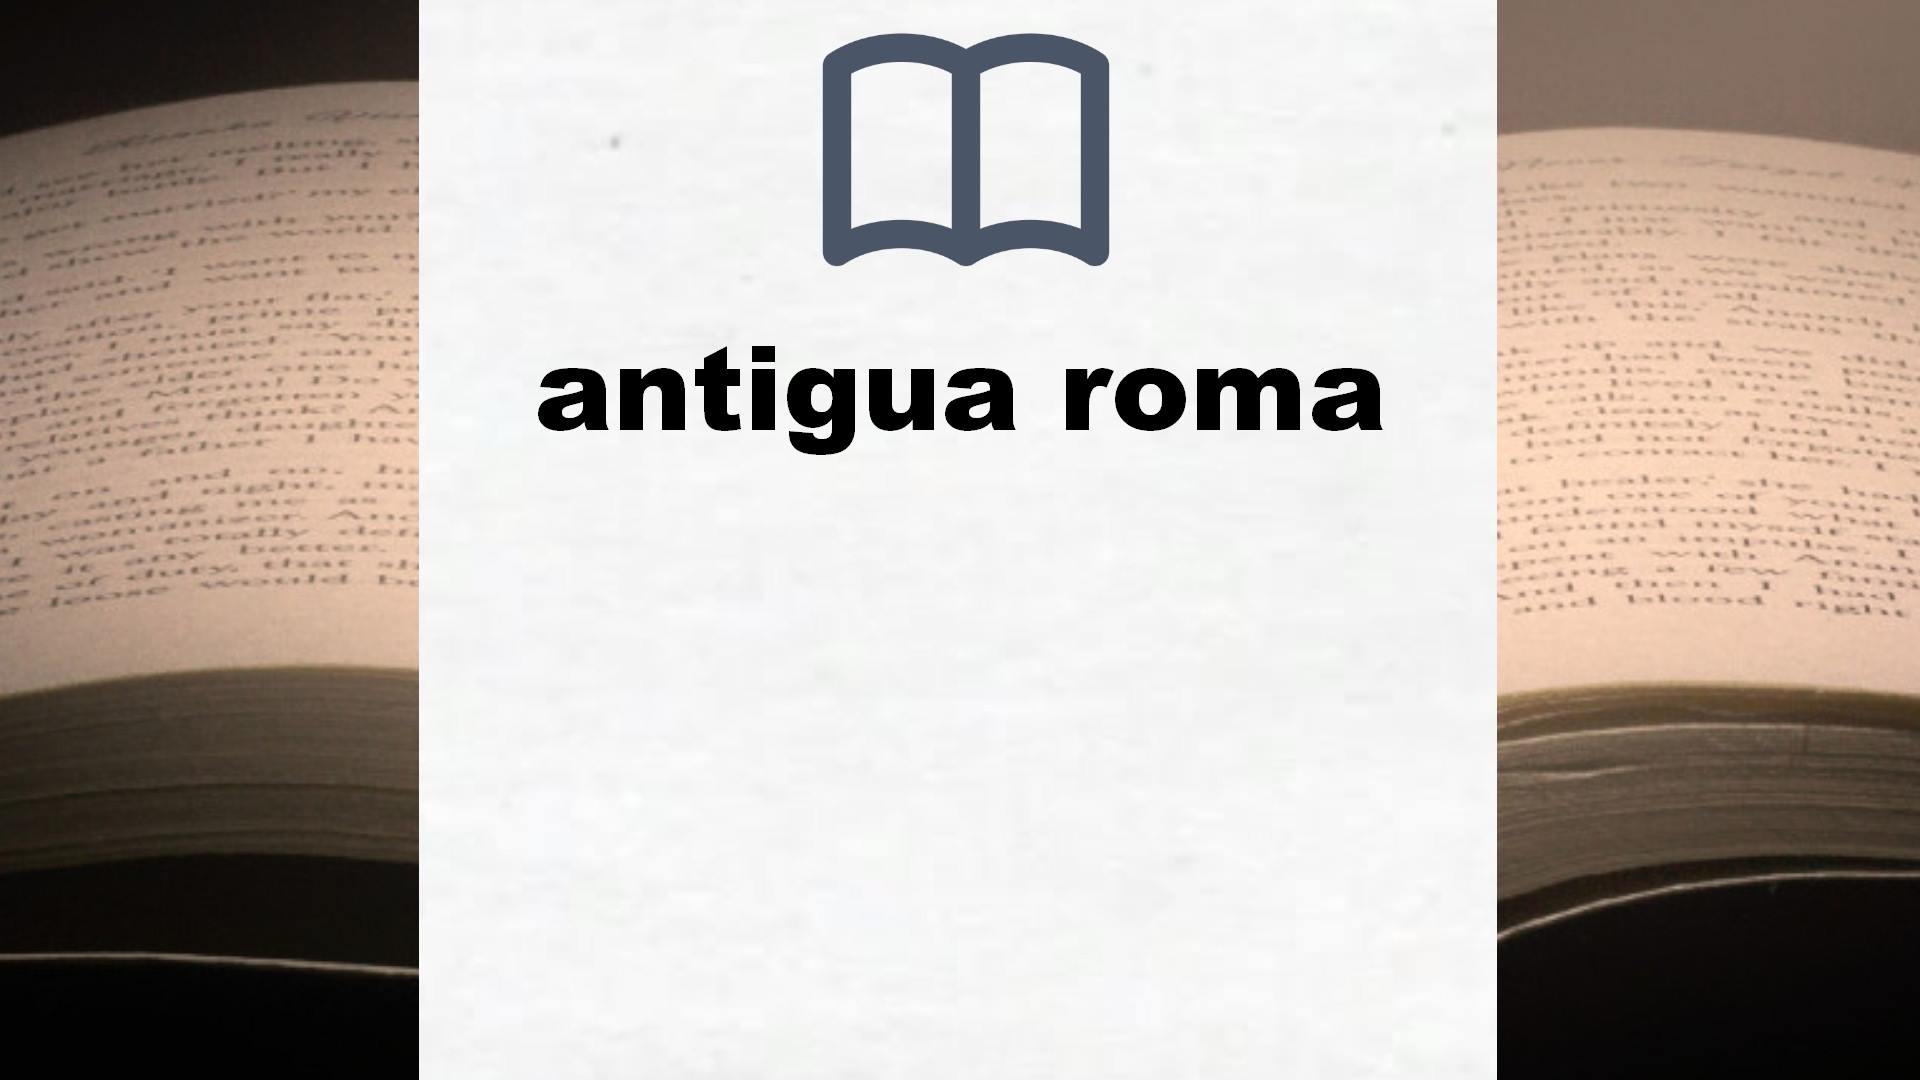 Libros sobre antigua roma